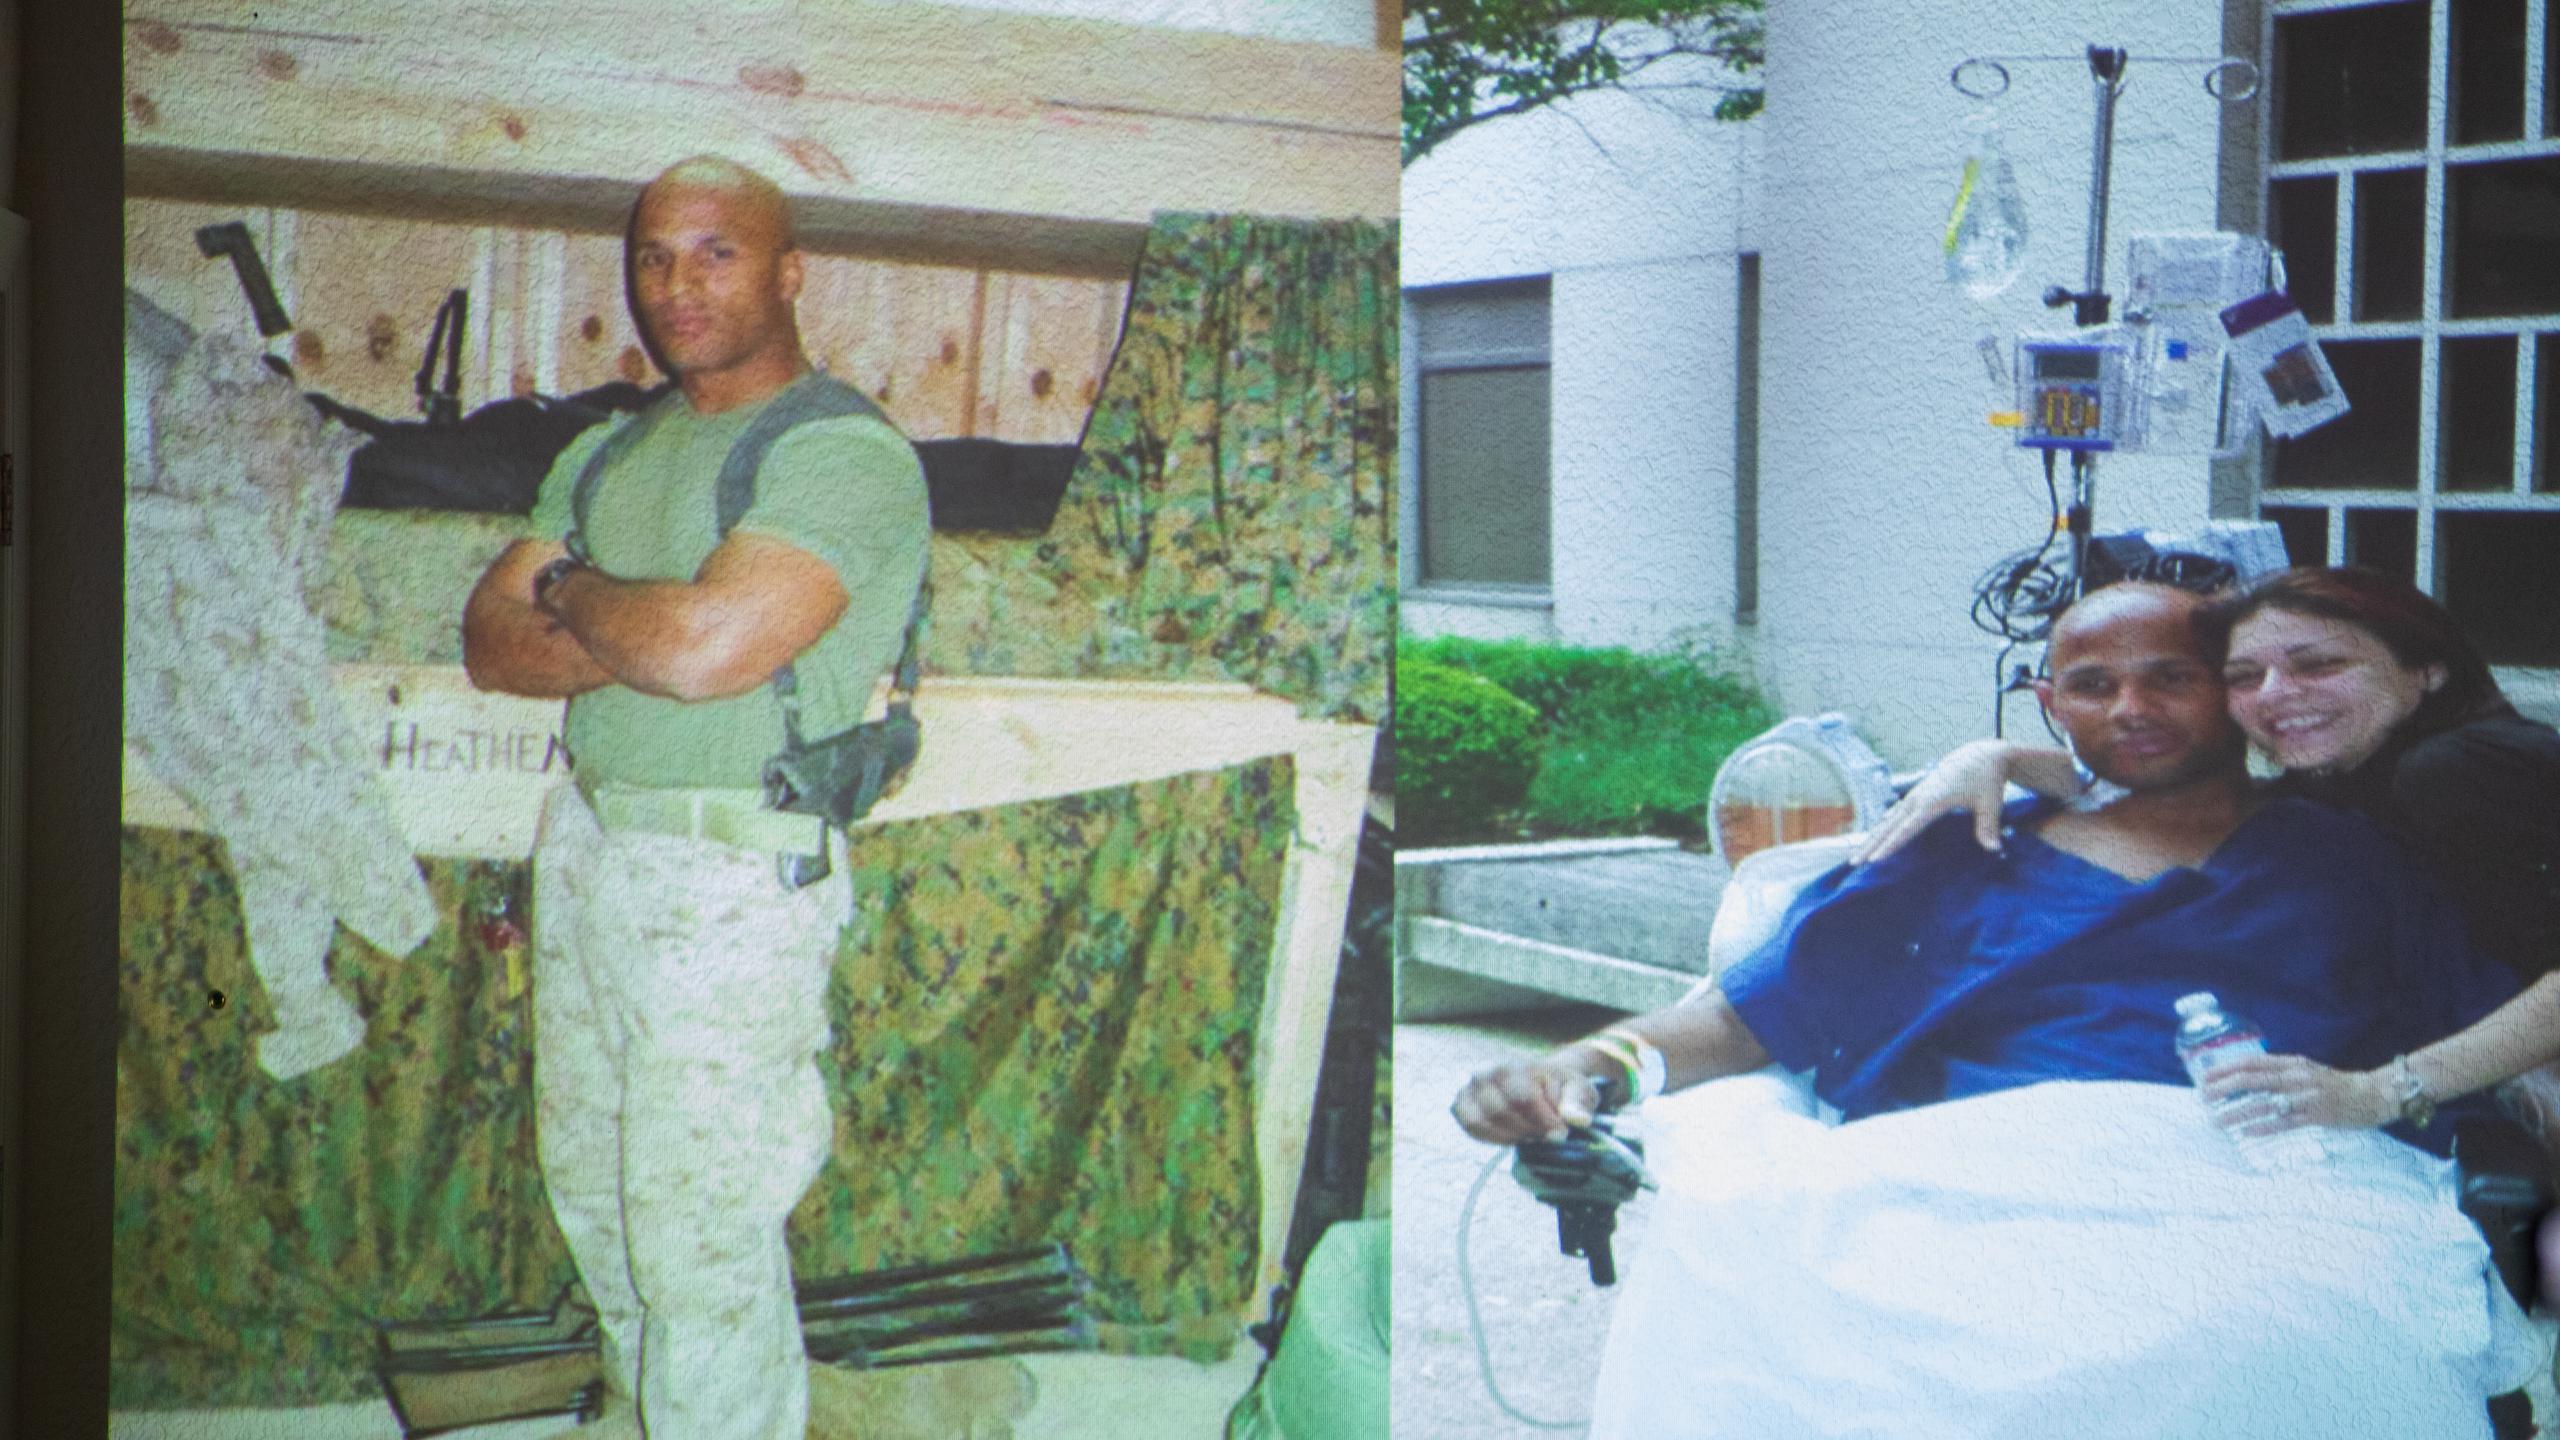 Con el apoyo de su esposa, Rosemary, y su fortalecimiento esperitual, Carlos Evans pudo superar el reto de perder sus piernas y mano izquierda tras pisar una bomba casera en Afganistán durante una misión que dirigía en 2010.